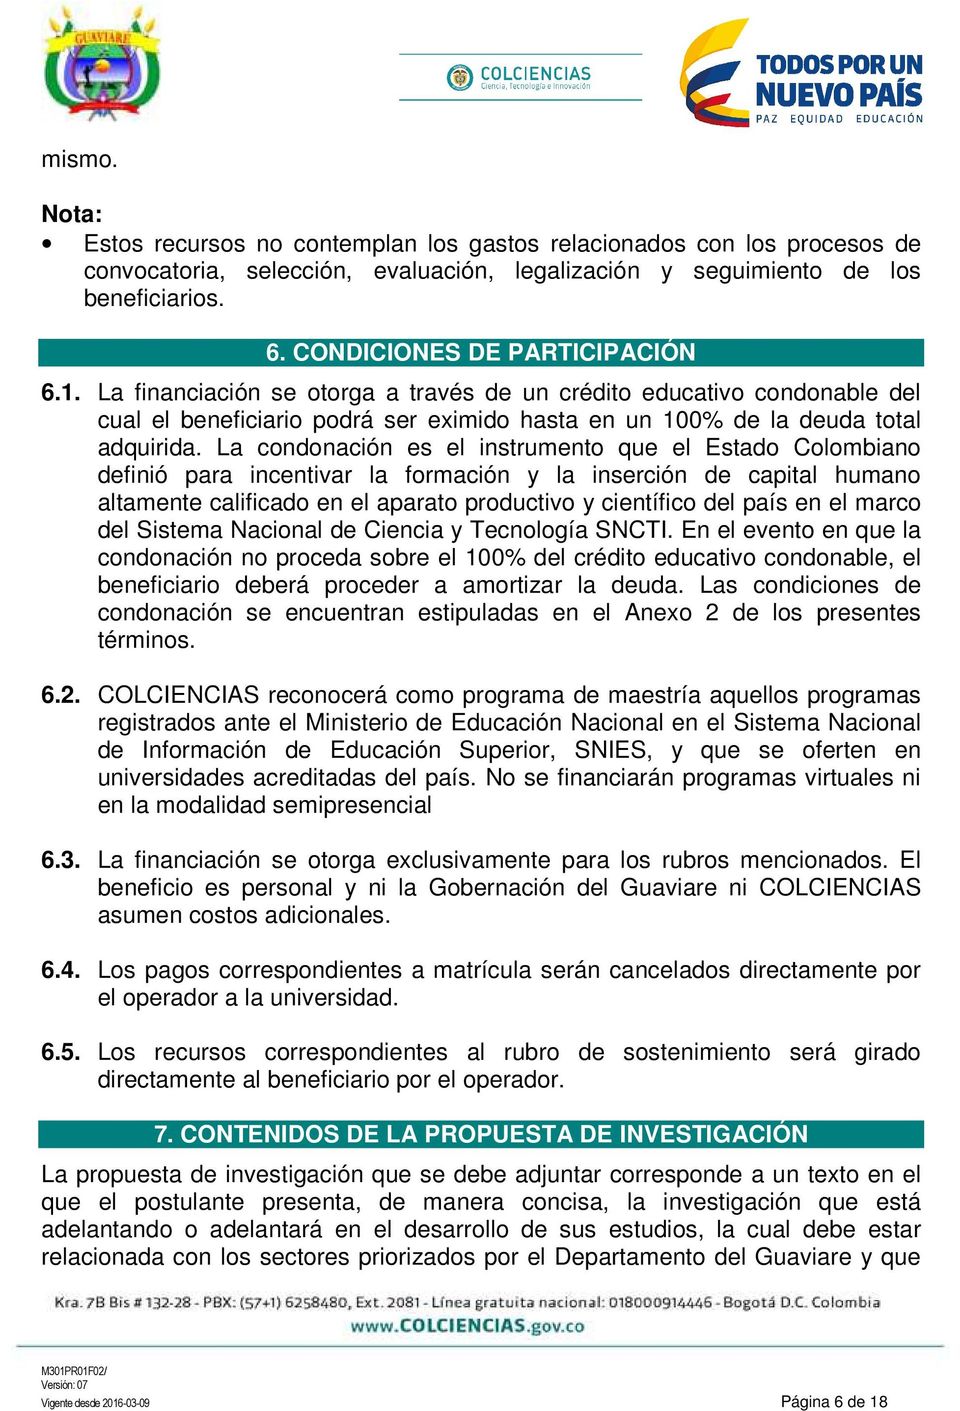 La condonación es el instrumento que el Estado Colombiano definió para incentivar la formación y la inserción de capital humano altamente calificado en el aparato productivo y científico del país en